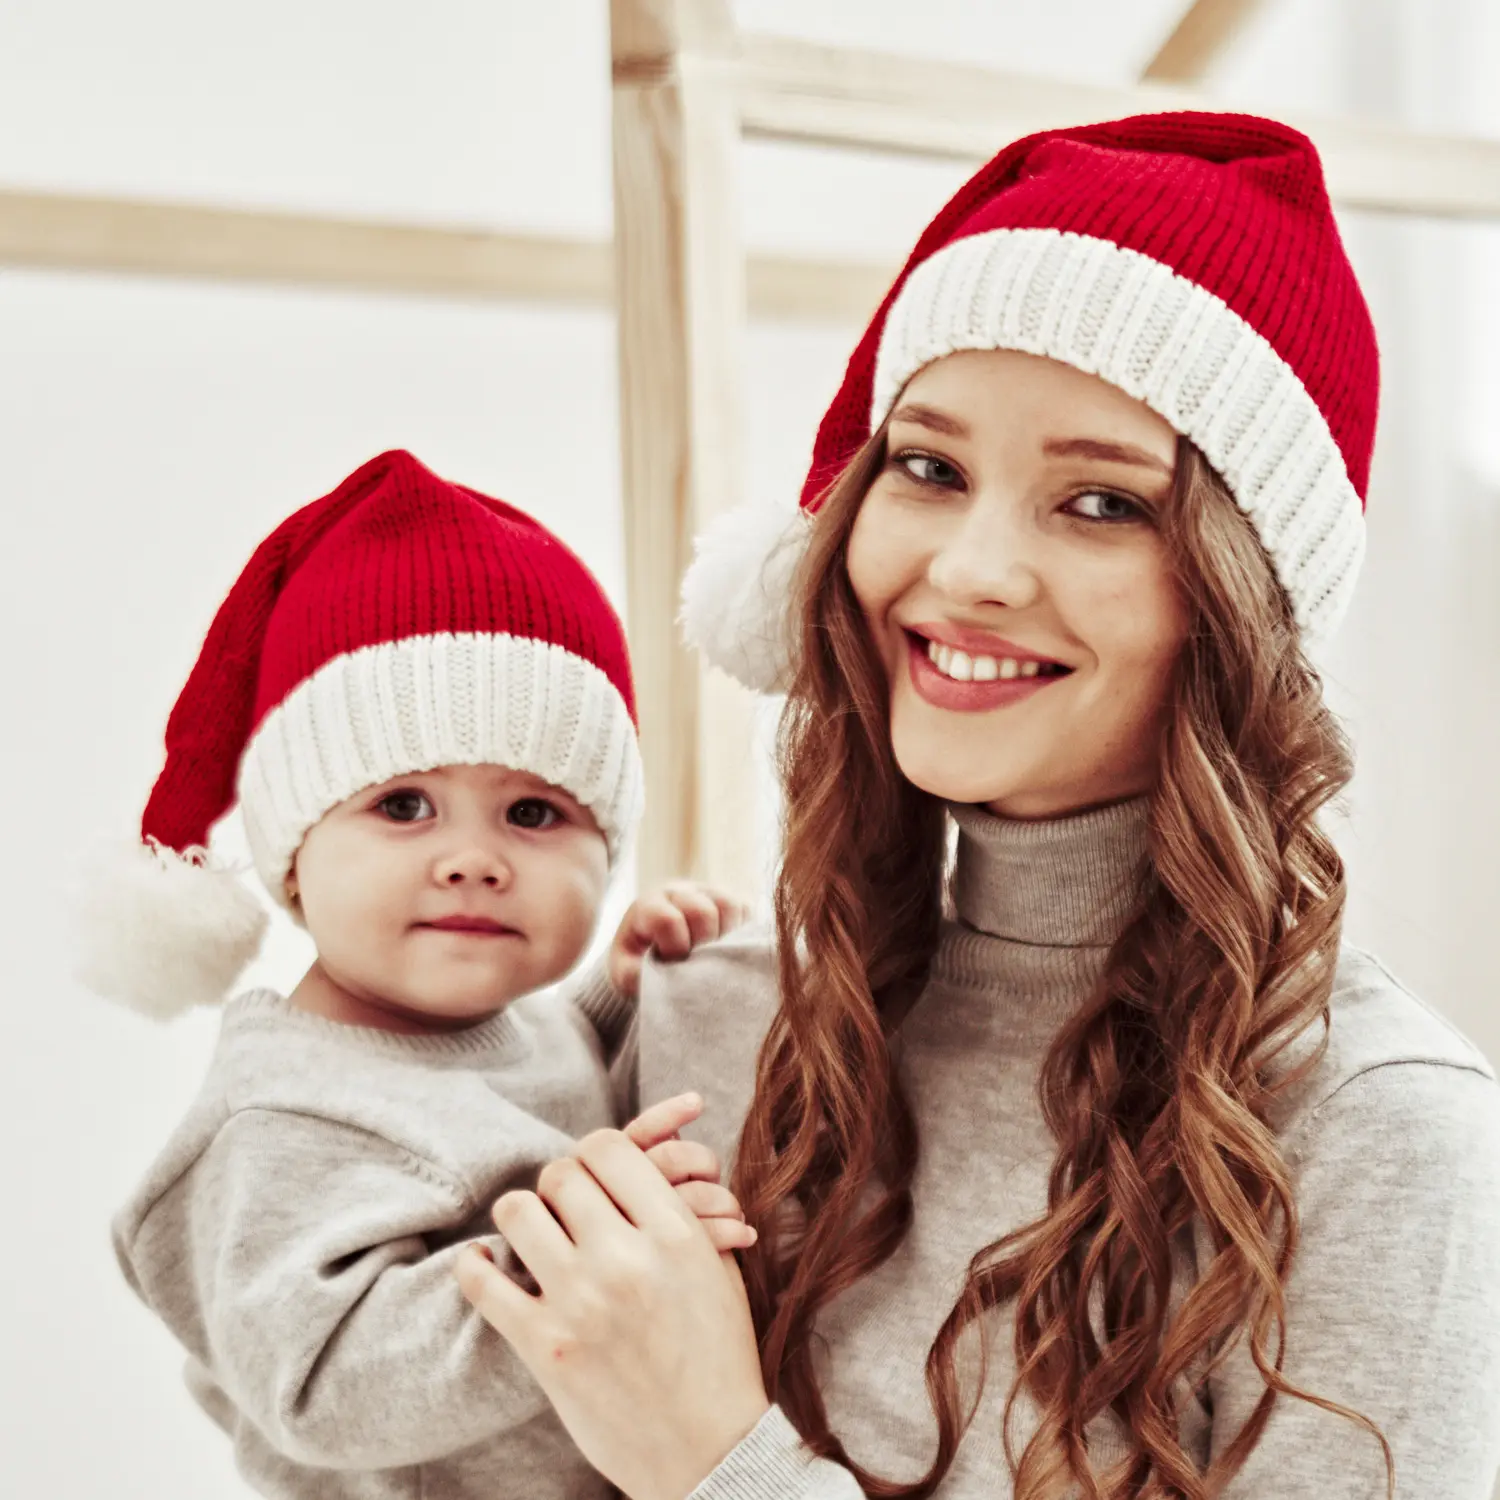 Cappello natalizio abbinato alla famiglia cappello invernale più caldo berretto lavorato a maglia per mamma e bambino cappello natalizio con pon pon genitore-figlio cappelli all'uncinetto di babbo natale